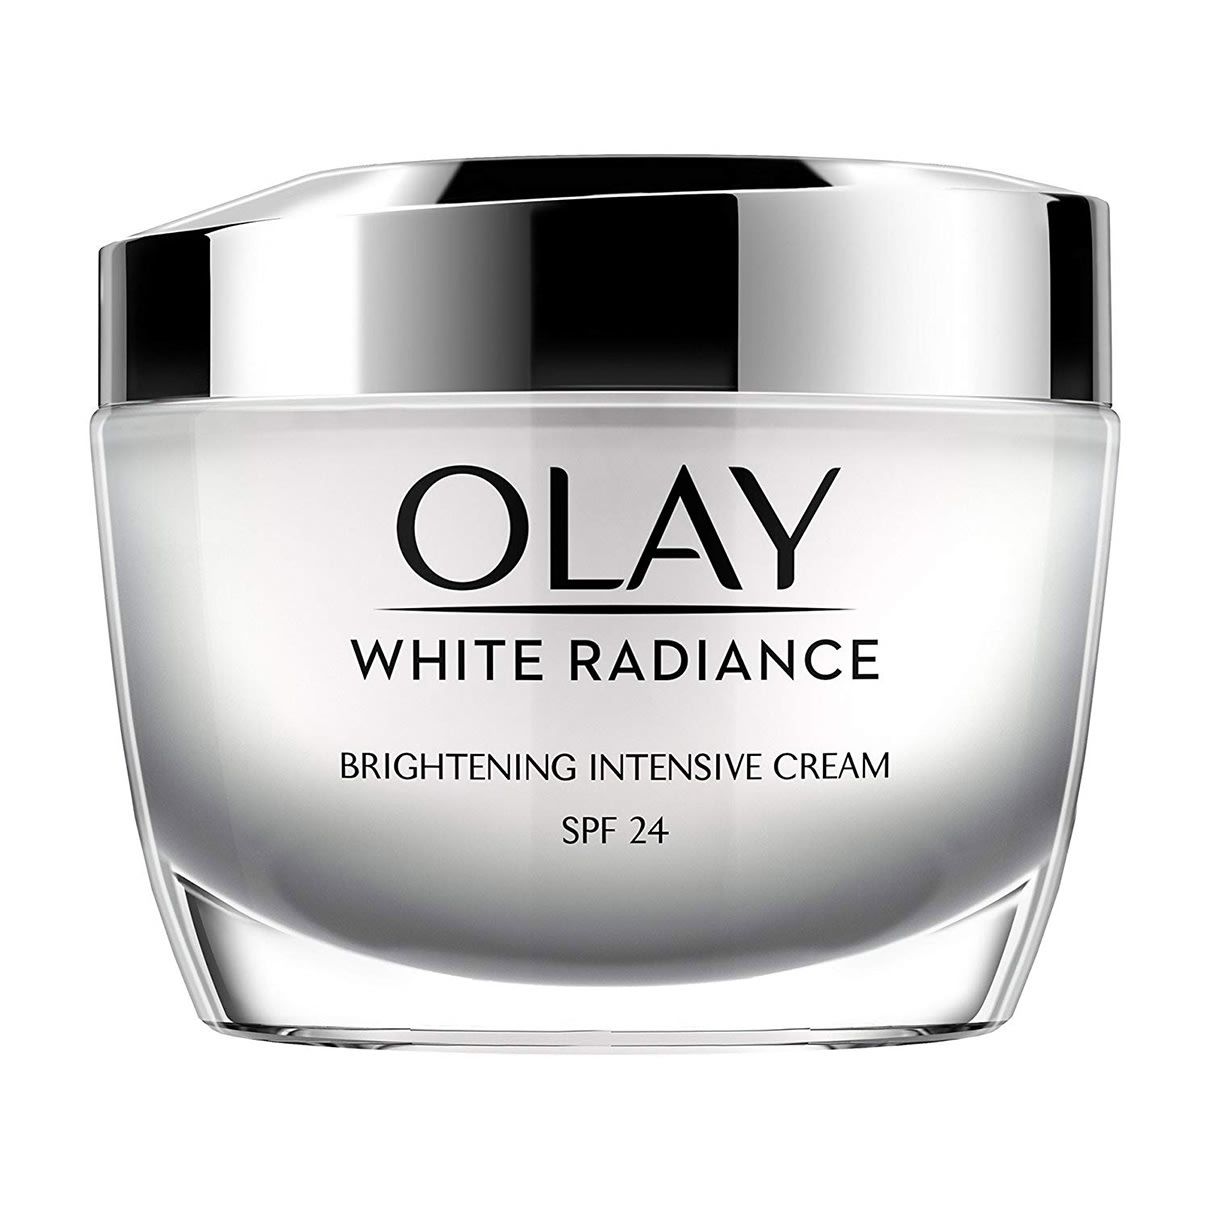 كريم أولاي للتفتيح العميق للبشرة Olay white radiance brightening intensive cream